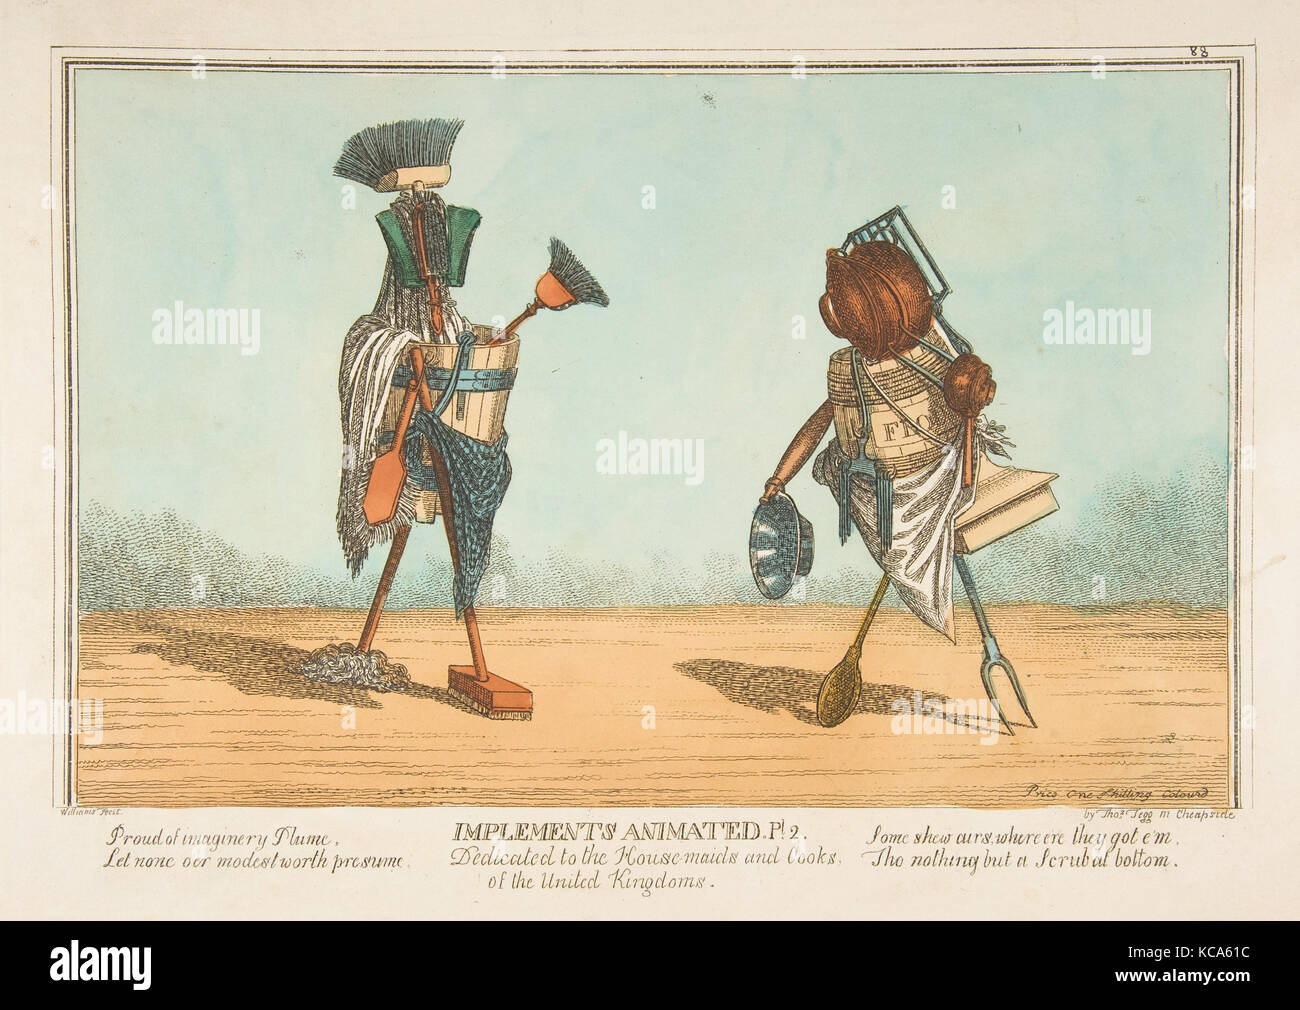 Implementa animato, Pl. 2, dedicato al cameriere e i cuochi dei regni uniti, Charles Williams, ca. 1811 Foto Stock